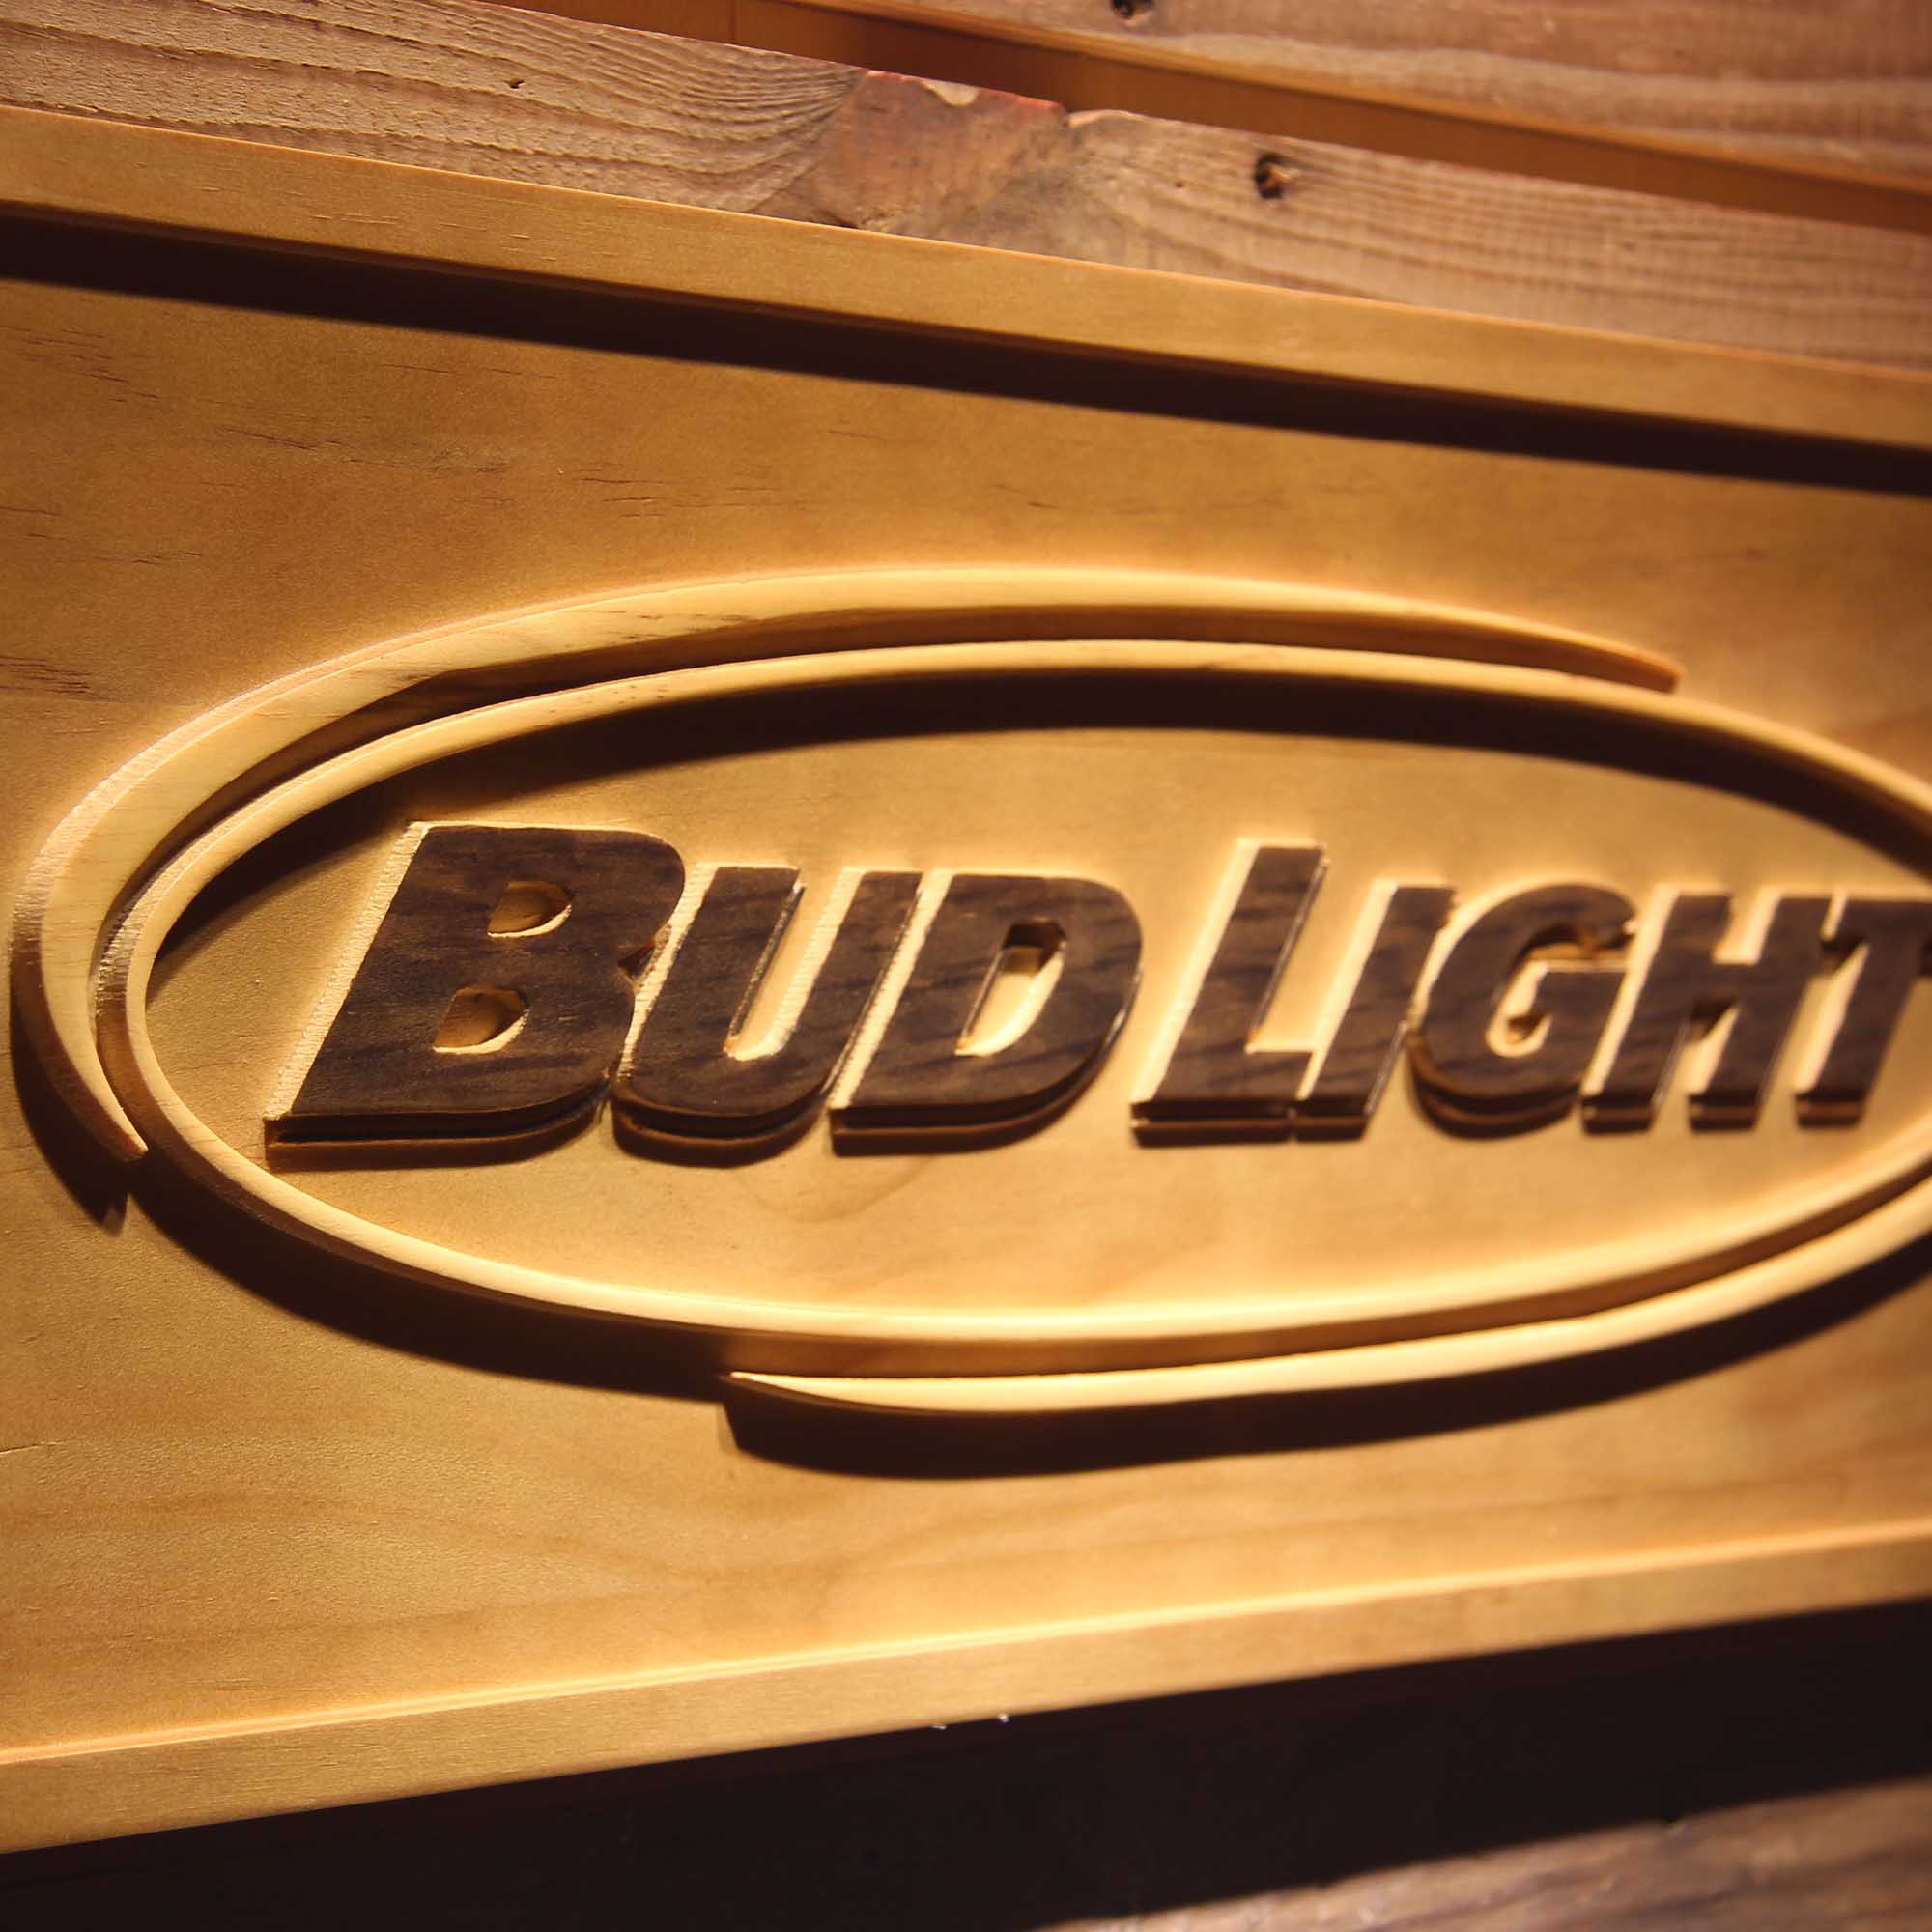 Bud Light 3D Wooden Engrave Sign